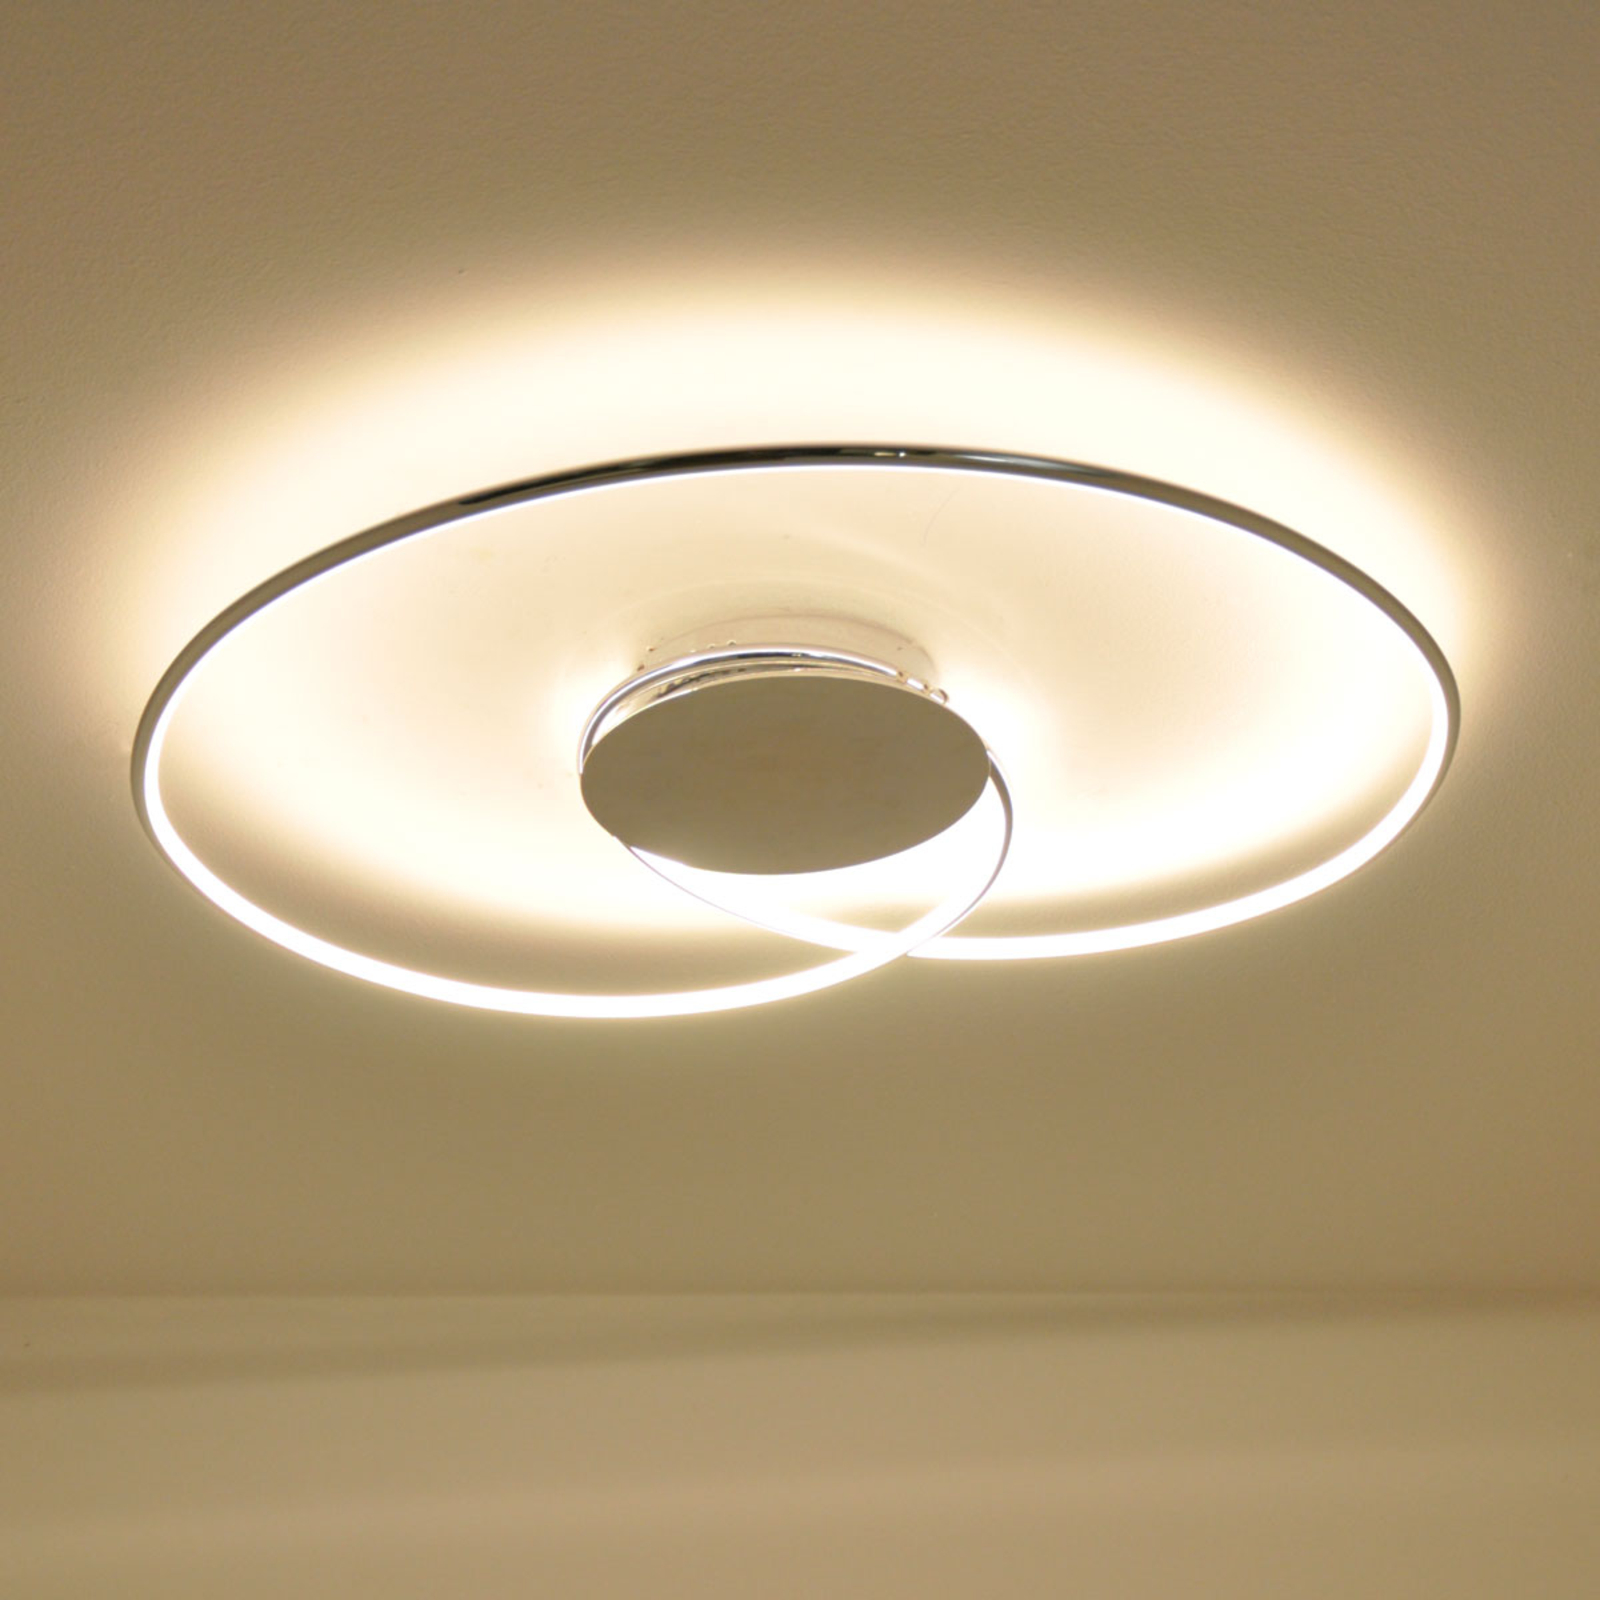 LED stropní svítidlo Joline, chrom, 74 cm